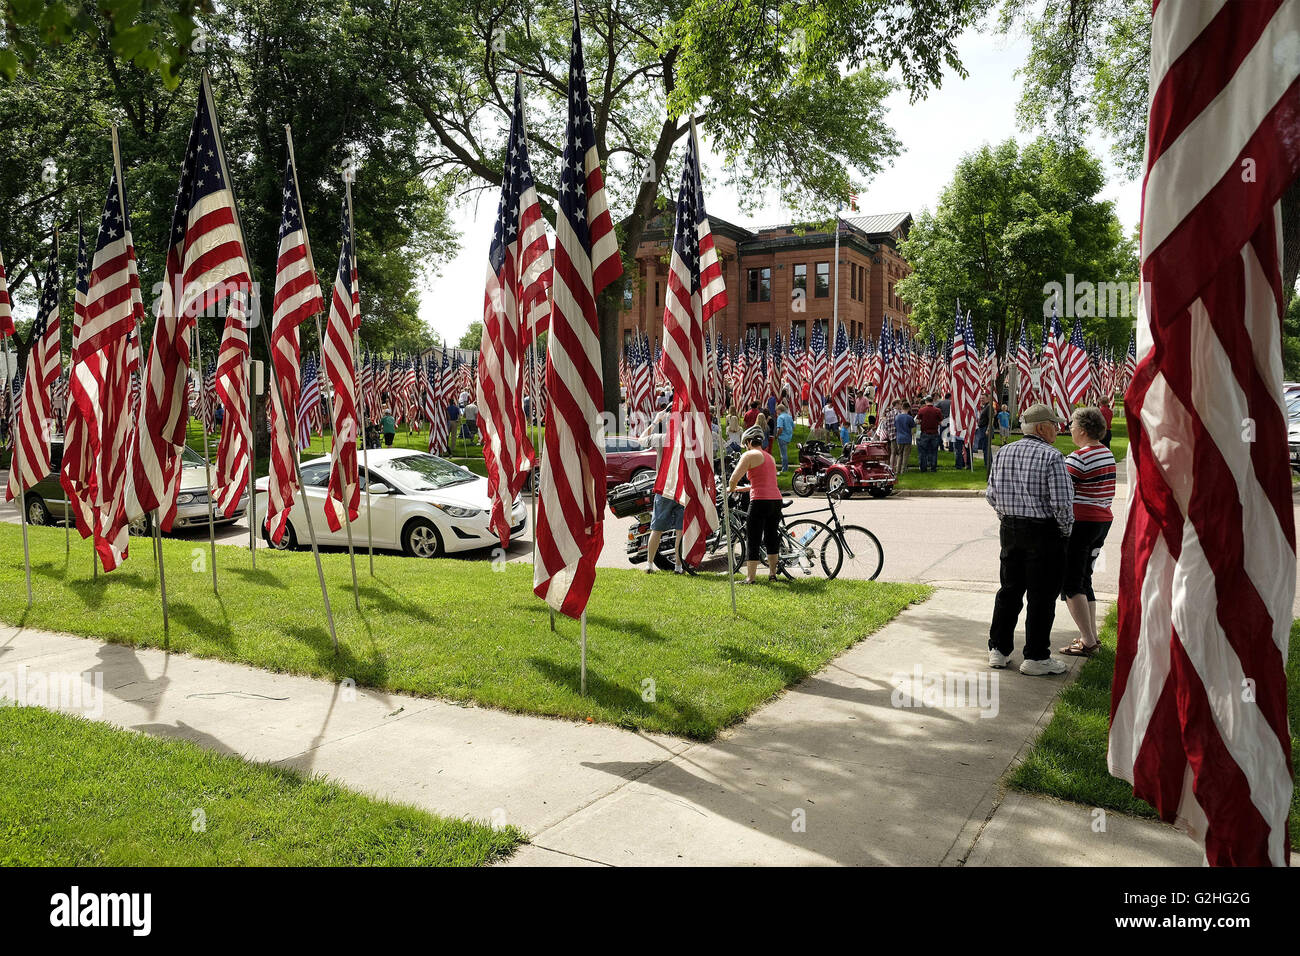 Le Mars, Iowa, États-Unis. 30 mai, 2016. Drapeaux dédié à ceux qui ont servi et présenté par leurs familles entourent le palais de justice du comté de Plymouth dans Le Mars, Iowa et déverser sur les quartiers environnants au cours de la célébration de la Journée du Souvenir lundi, 30 mai 2016. La communauté a célébré son 51e Avenue des drapeaux au cours de la 150e anniversaire de Memorial Day avec une présentation de 1 266 drapeaux dédié au secteur local des anciens combattants qui ont servi leur pays. © Jerry Mennenga/ZUMA/Alamy Fil Live News Banque D'Images